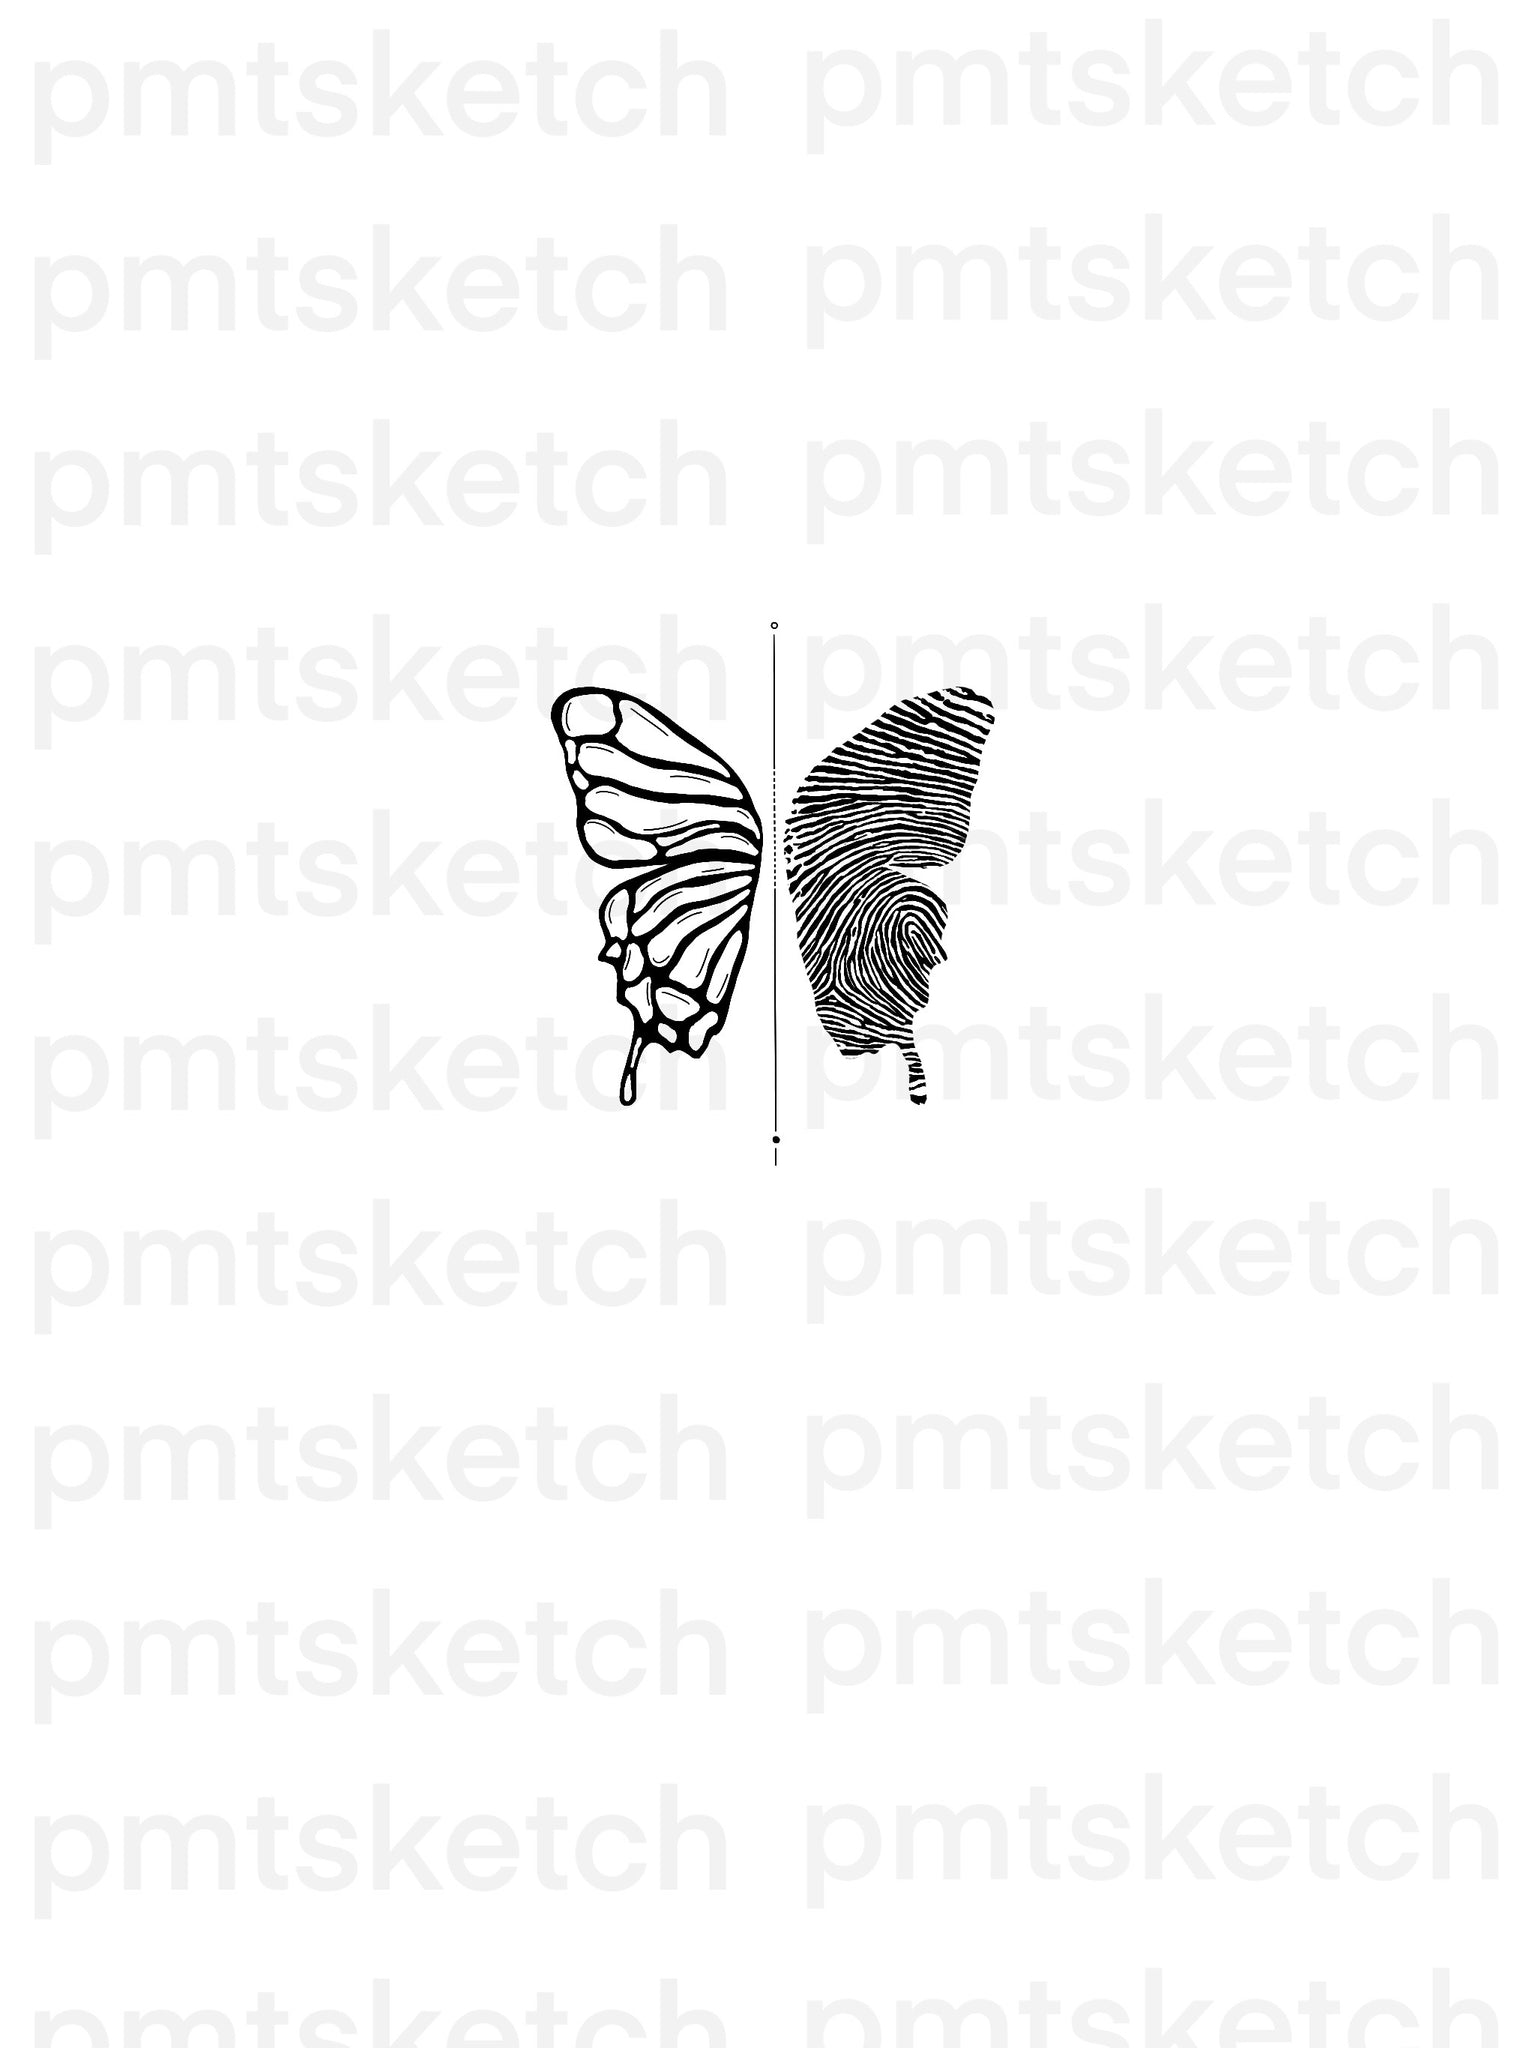 Black Oak Tattoo  Motherdaughter fingerprint butterfly   Facebook